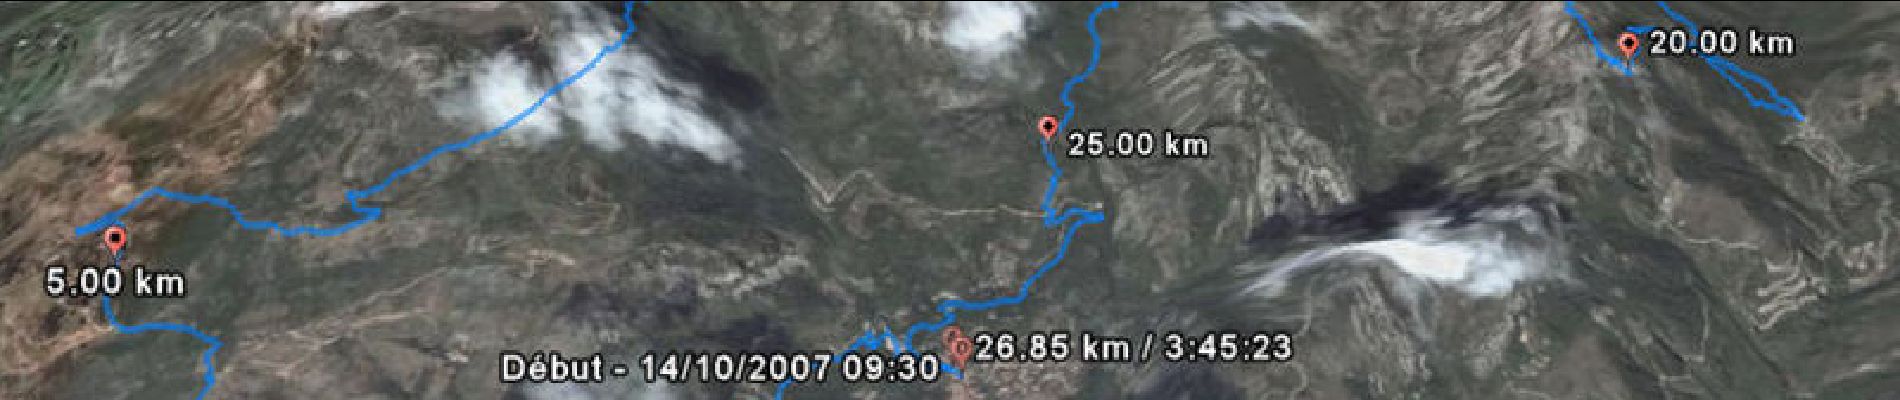 Randonnée Course à pied Gorbio - Trail de Gorbio 32km 2007 - Photo